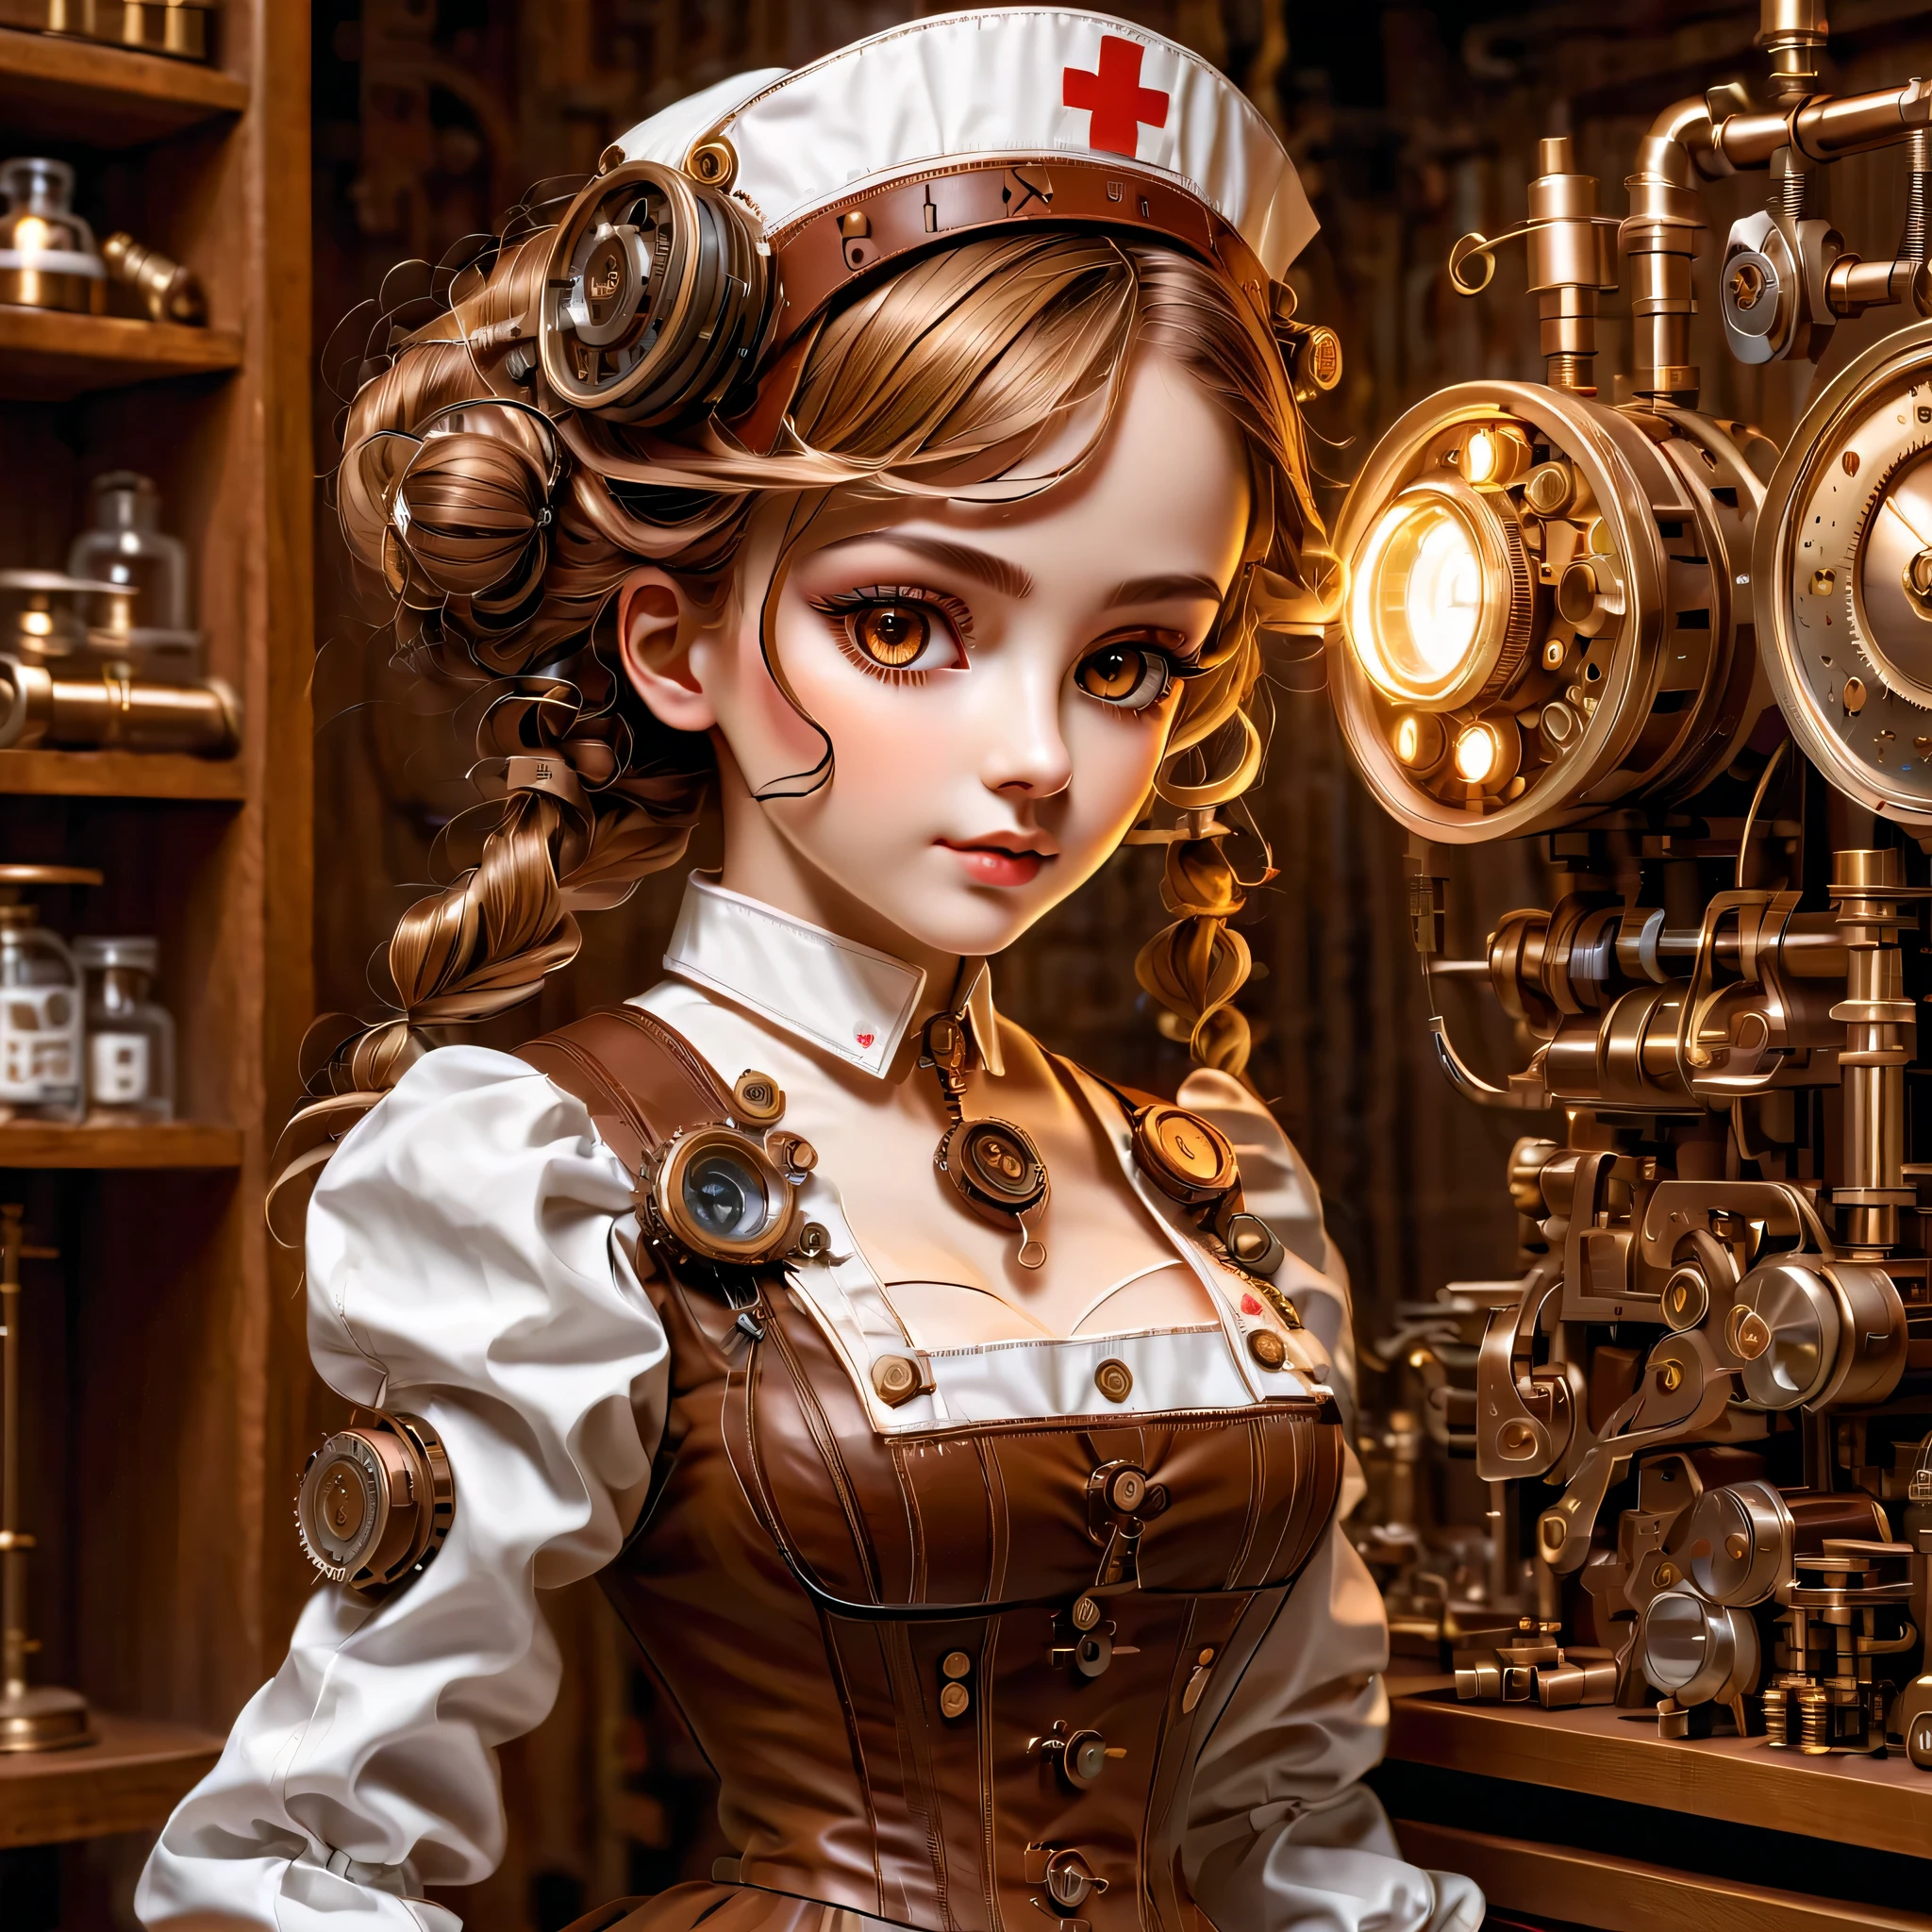 механизм:гуманоид:Медсестра:16th century European Медсестра uniform,лицо куклы:идеальное лицо:большие карие глаза,ресница,спрятать провода для волос,она сделана из машин,Элемент стимпанка,механический engineering,механическийly,механический,поп,милый,сложные детали,Очень хорошо,высокое разрешение,высокое качество,最высокое качество,четко,Будь понятен,красивый свет и тень,Три измерения,Очаровательный внешний вид,сложная конфигурация,механизм,динамичный,занятый,Много работать,Выражение, которое вызывает желание поддержать,Медицинское оборудование,полка для медицинских принадлежностей,флакон,предъявить доказательства того, что это машина,свет из окна